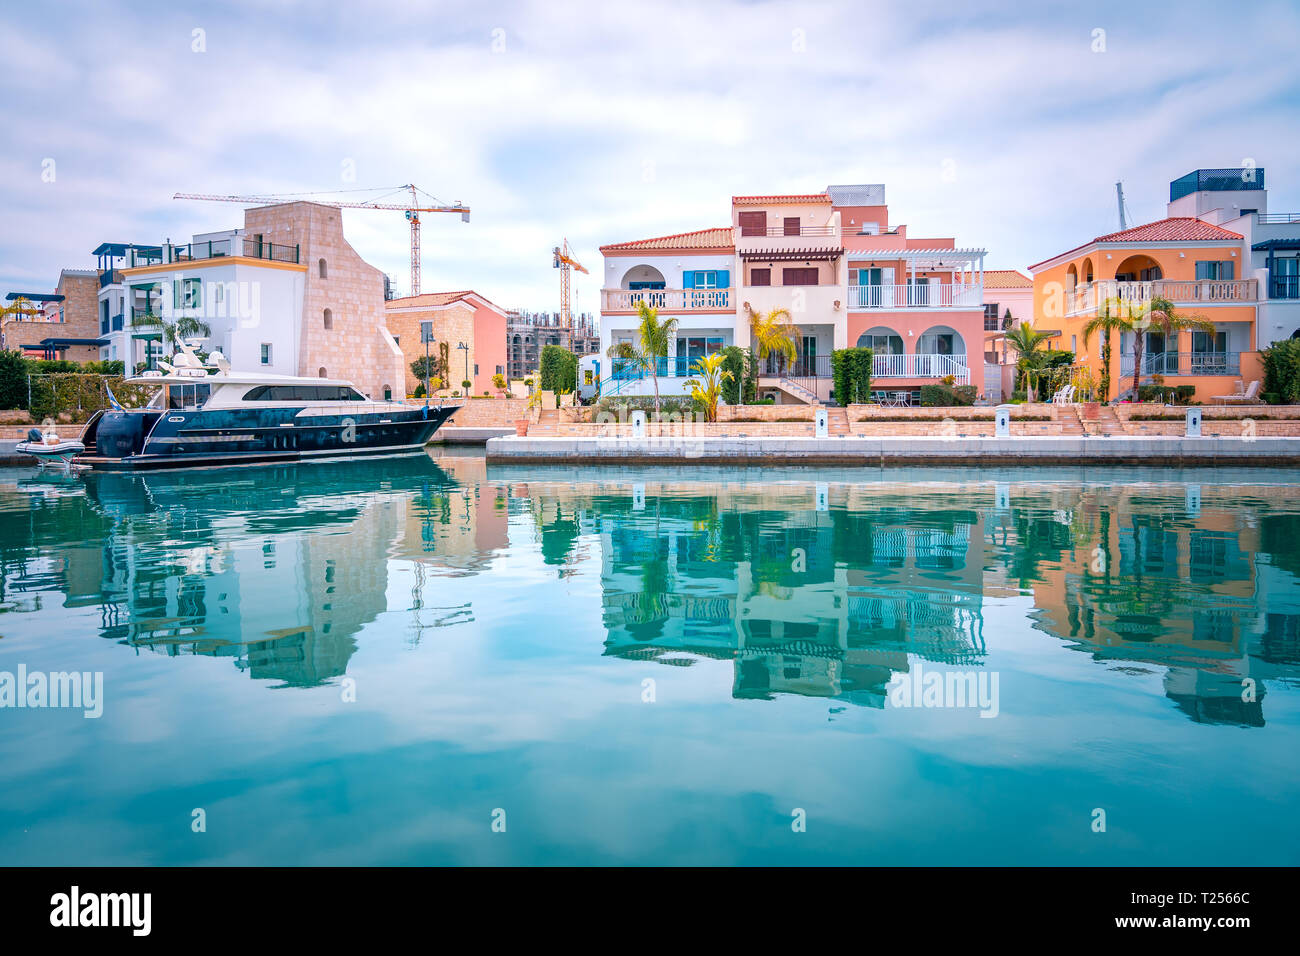 Schöner Blick auf die Marina, Limassol Stadt Zypern. Moderne und luxuriöse Leben in neu entwickelten Hafen mit Yachten, Restaurants, Geschäfte und Uferpromenade. Stockfoto